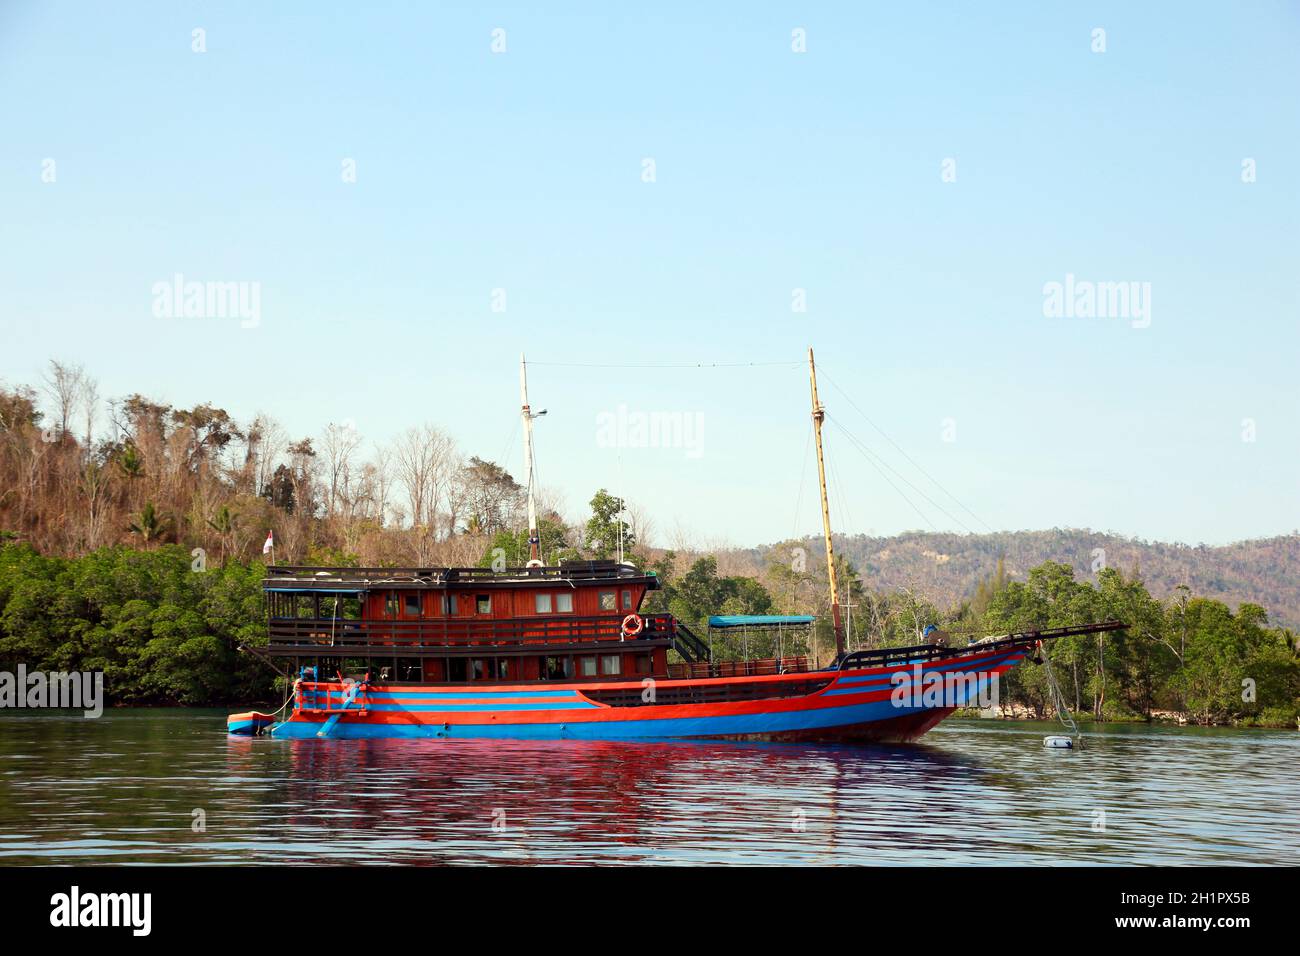 Tauchschiff in traditionellem Baustil für mehrtägige Tauchsafari, Nordsulawesi, Indonesien, Bangka Island Stock Photo